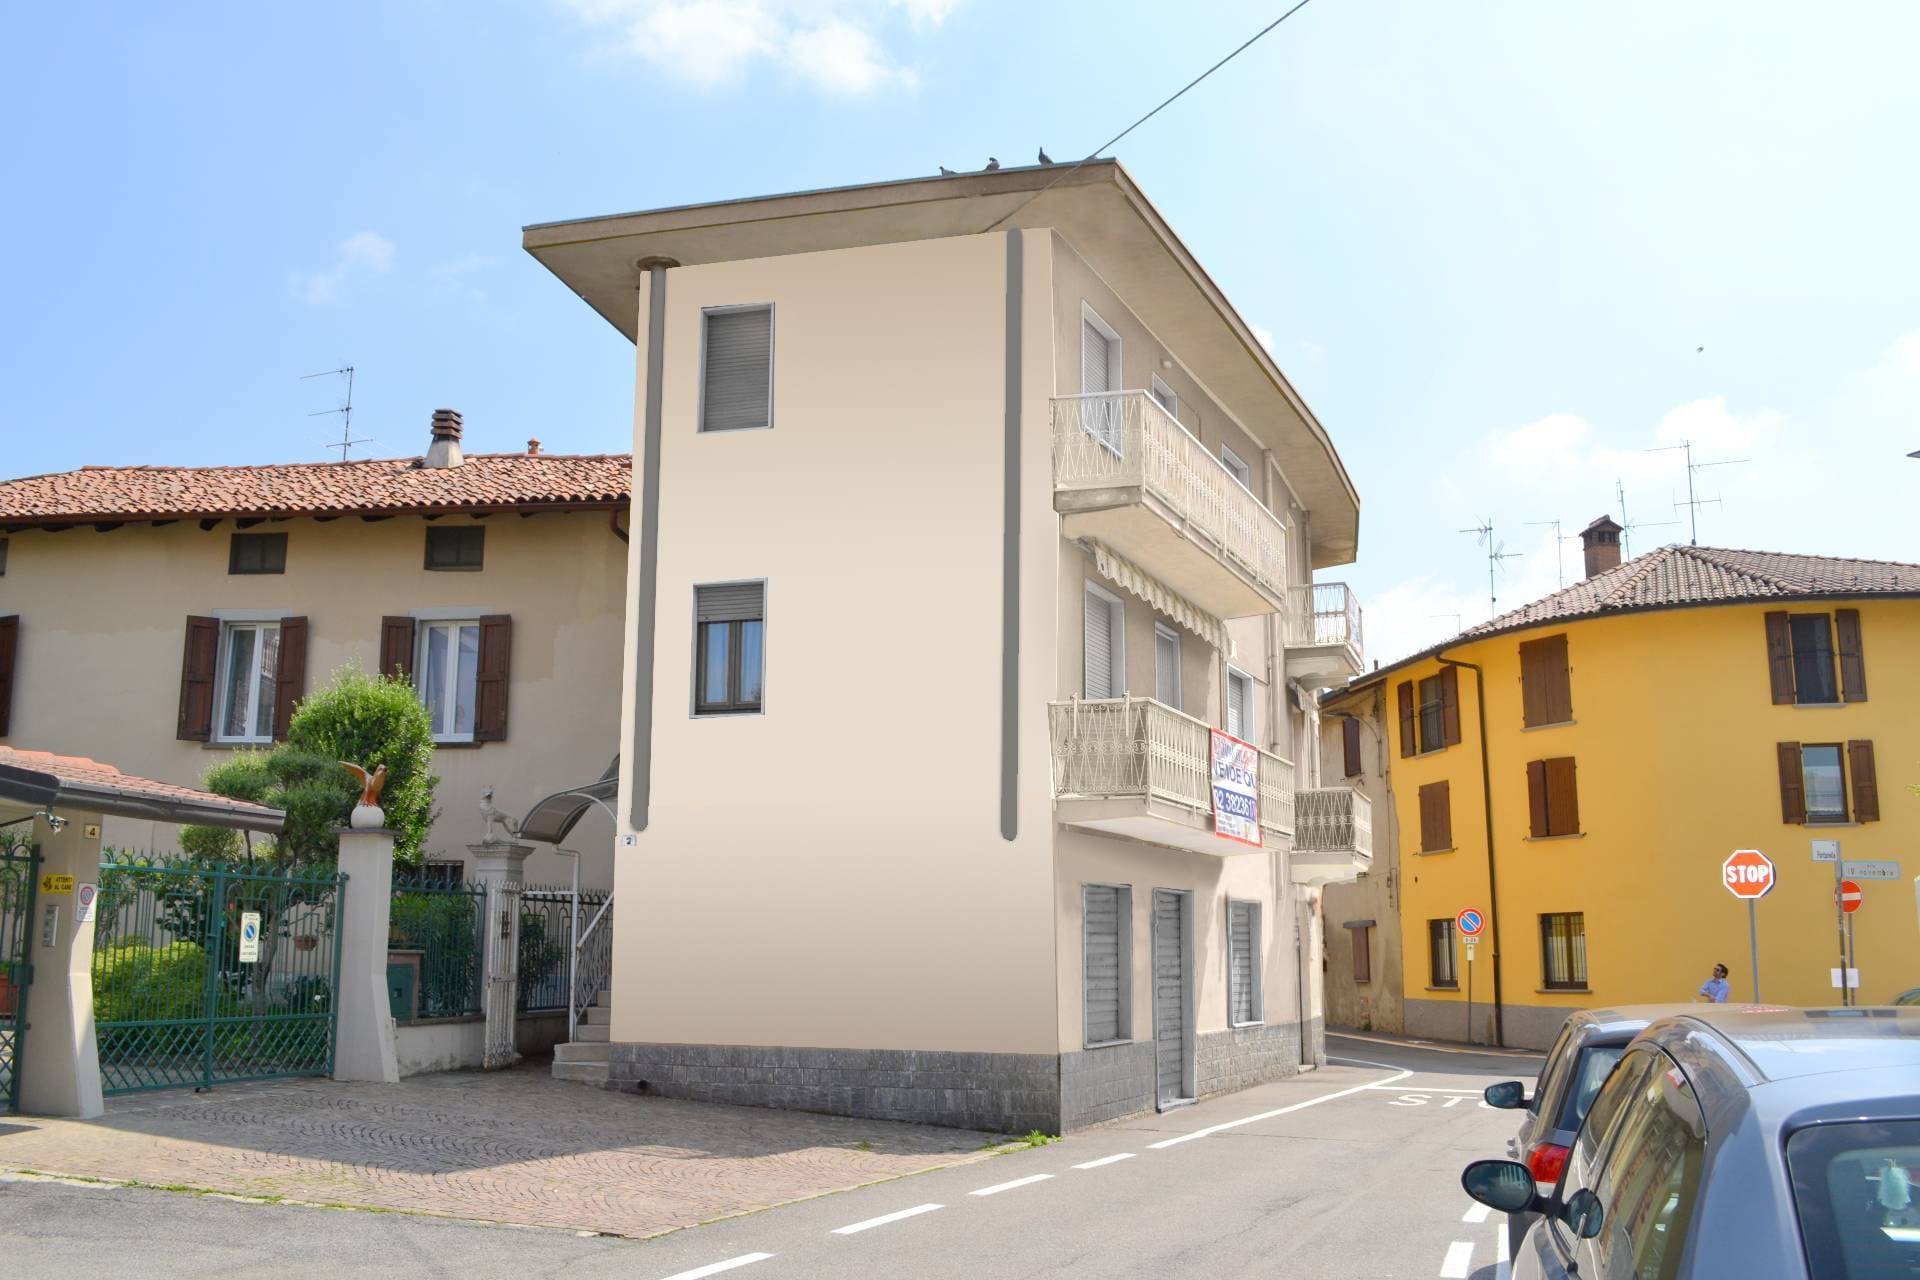 Appartamento in vendita a Suisio, 3 locali, prezzo € 100.000 | PortaleAgenzieImmobiliari.it